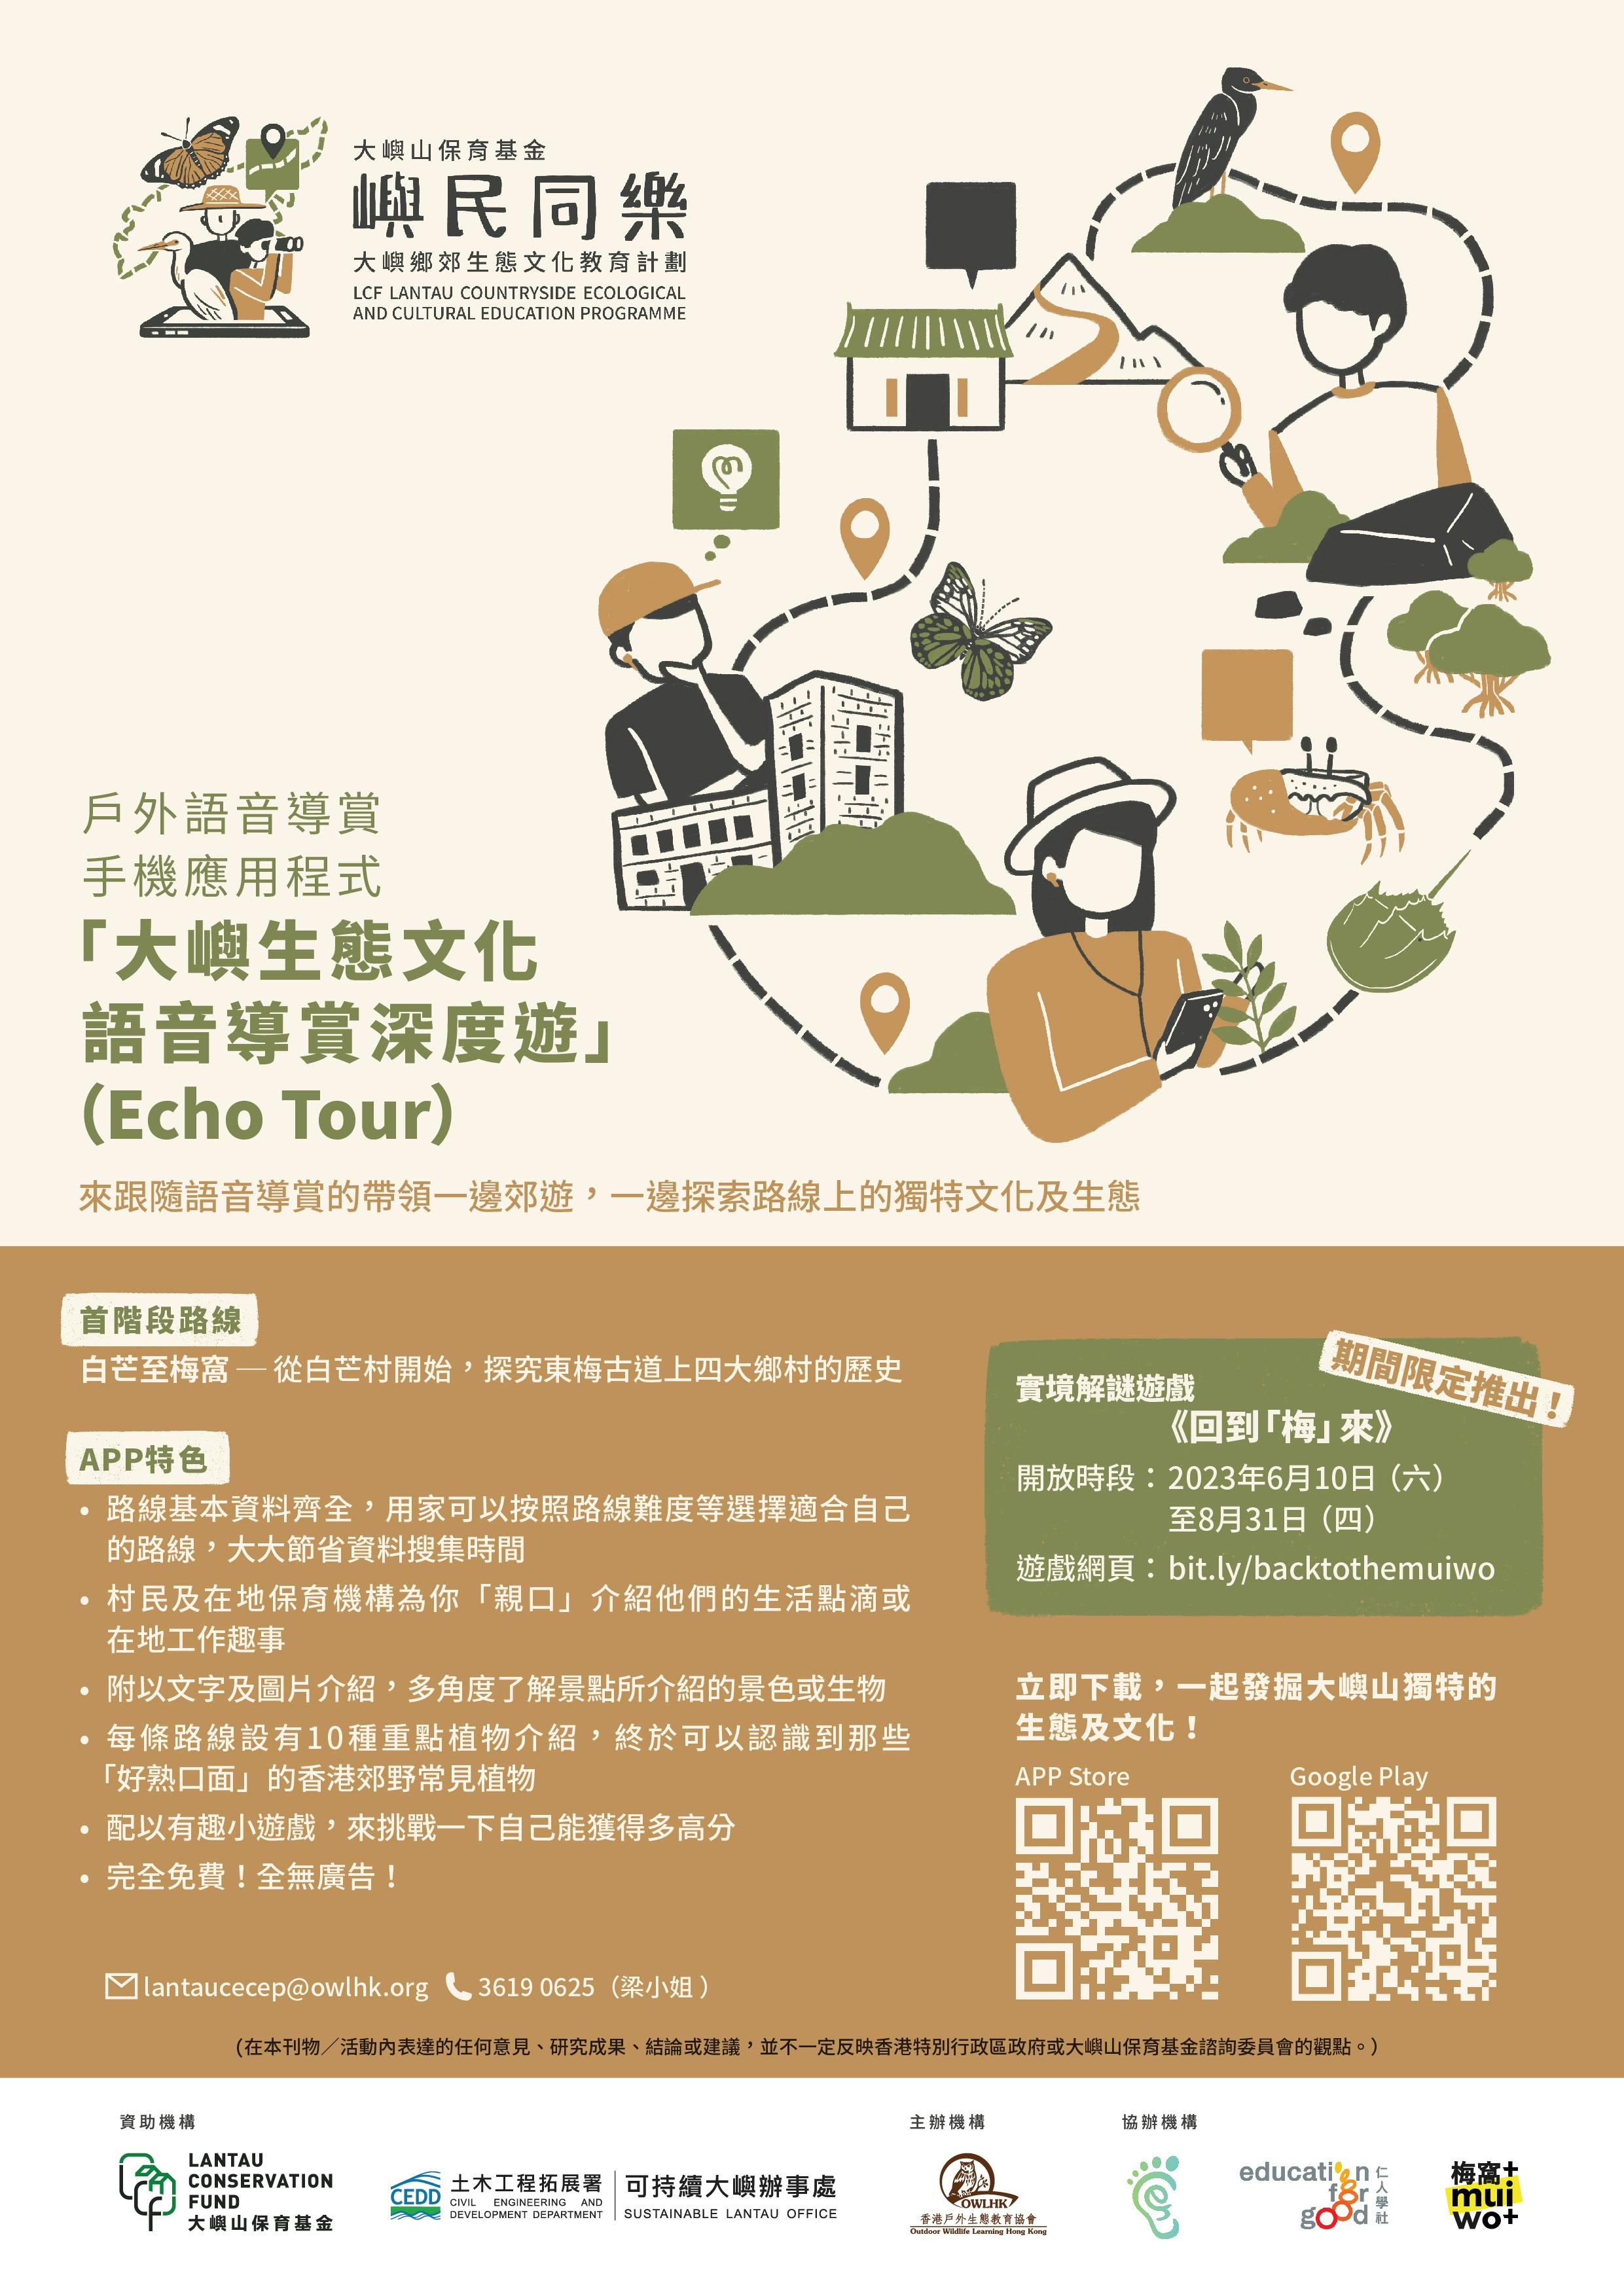 戶外語音導賞手機應用程式Echo Tour